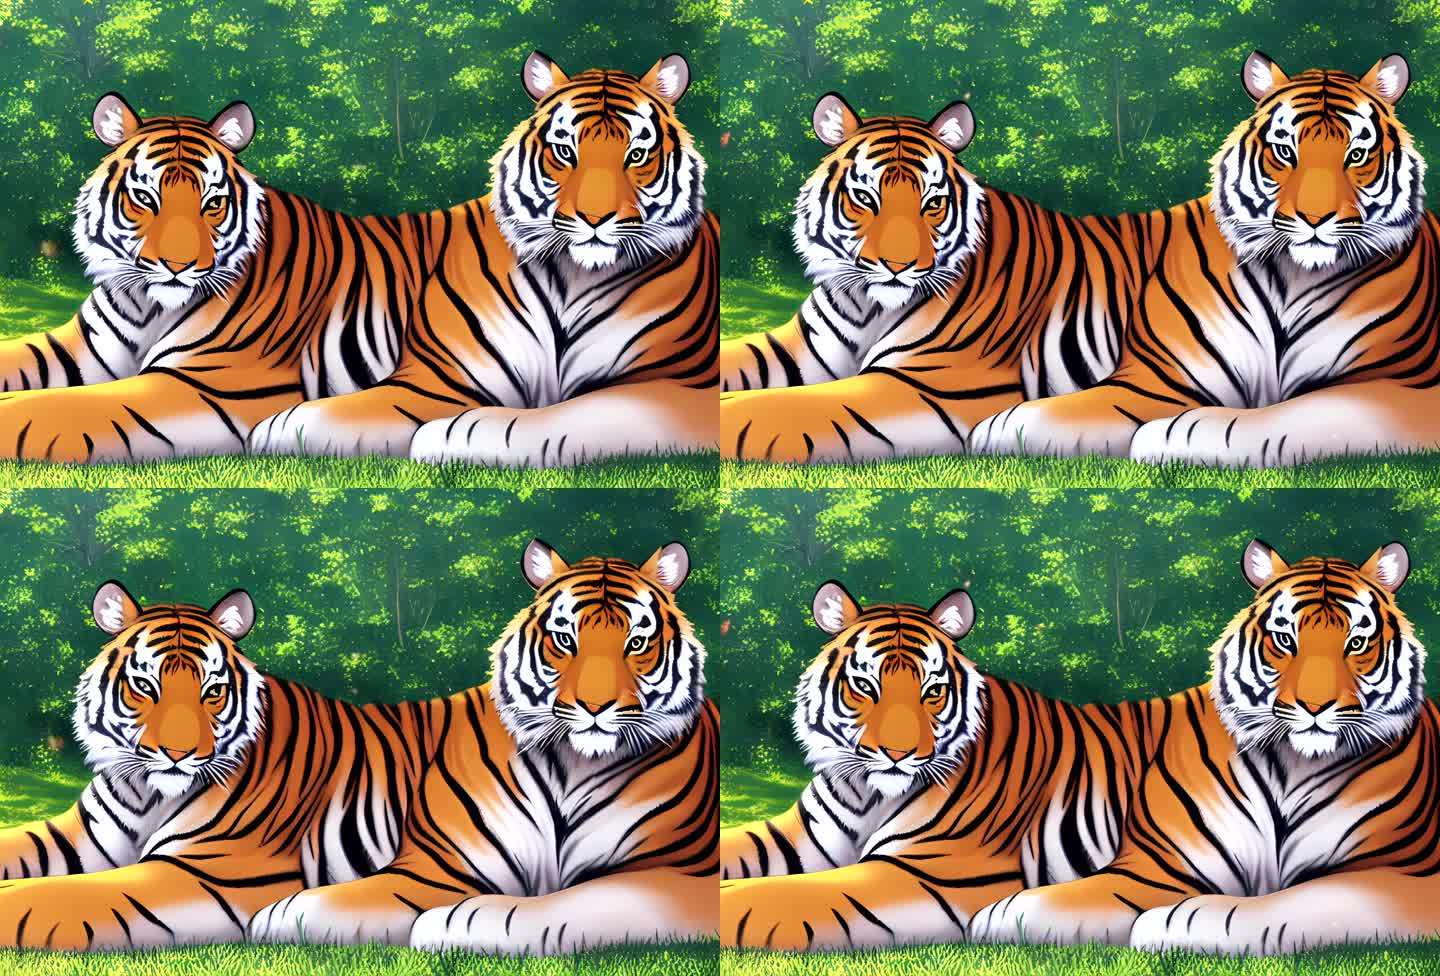 两只老虎